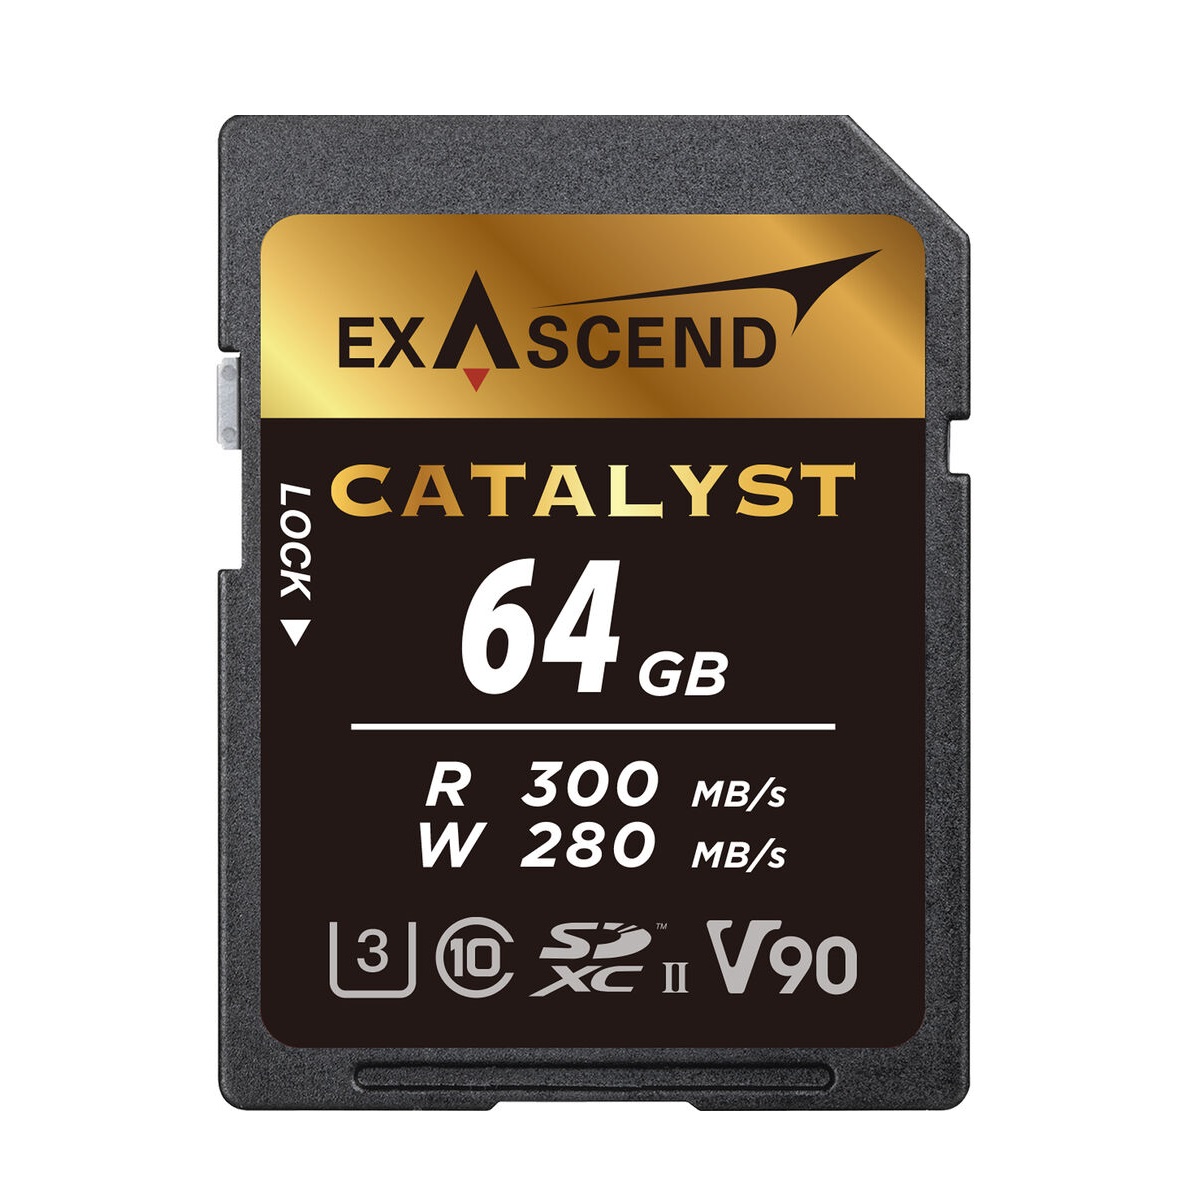 کارت حافظه CATALYST اکساسند مدل SDXC-II-V90 کلاس 10 استاندارد UHS-I سرعت 300MBps ظرفیت 64 گیگابایت